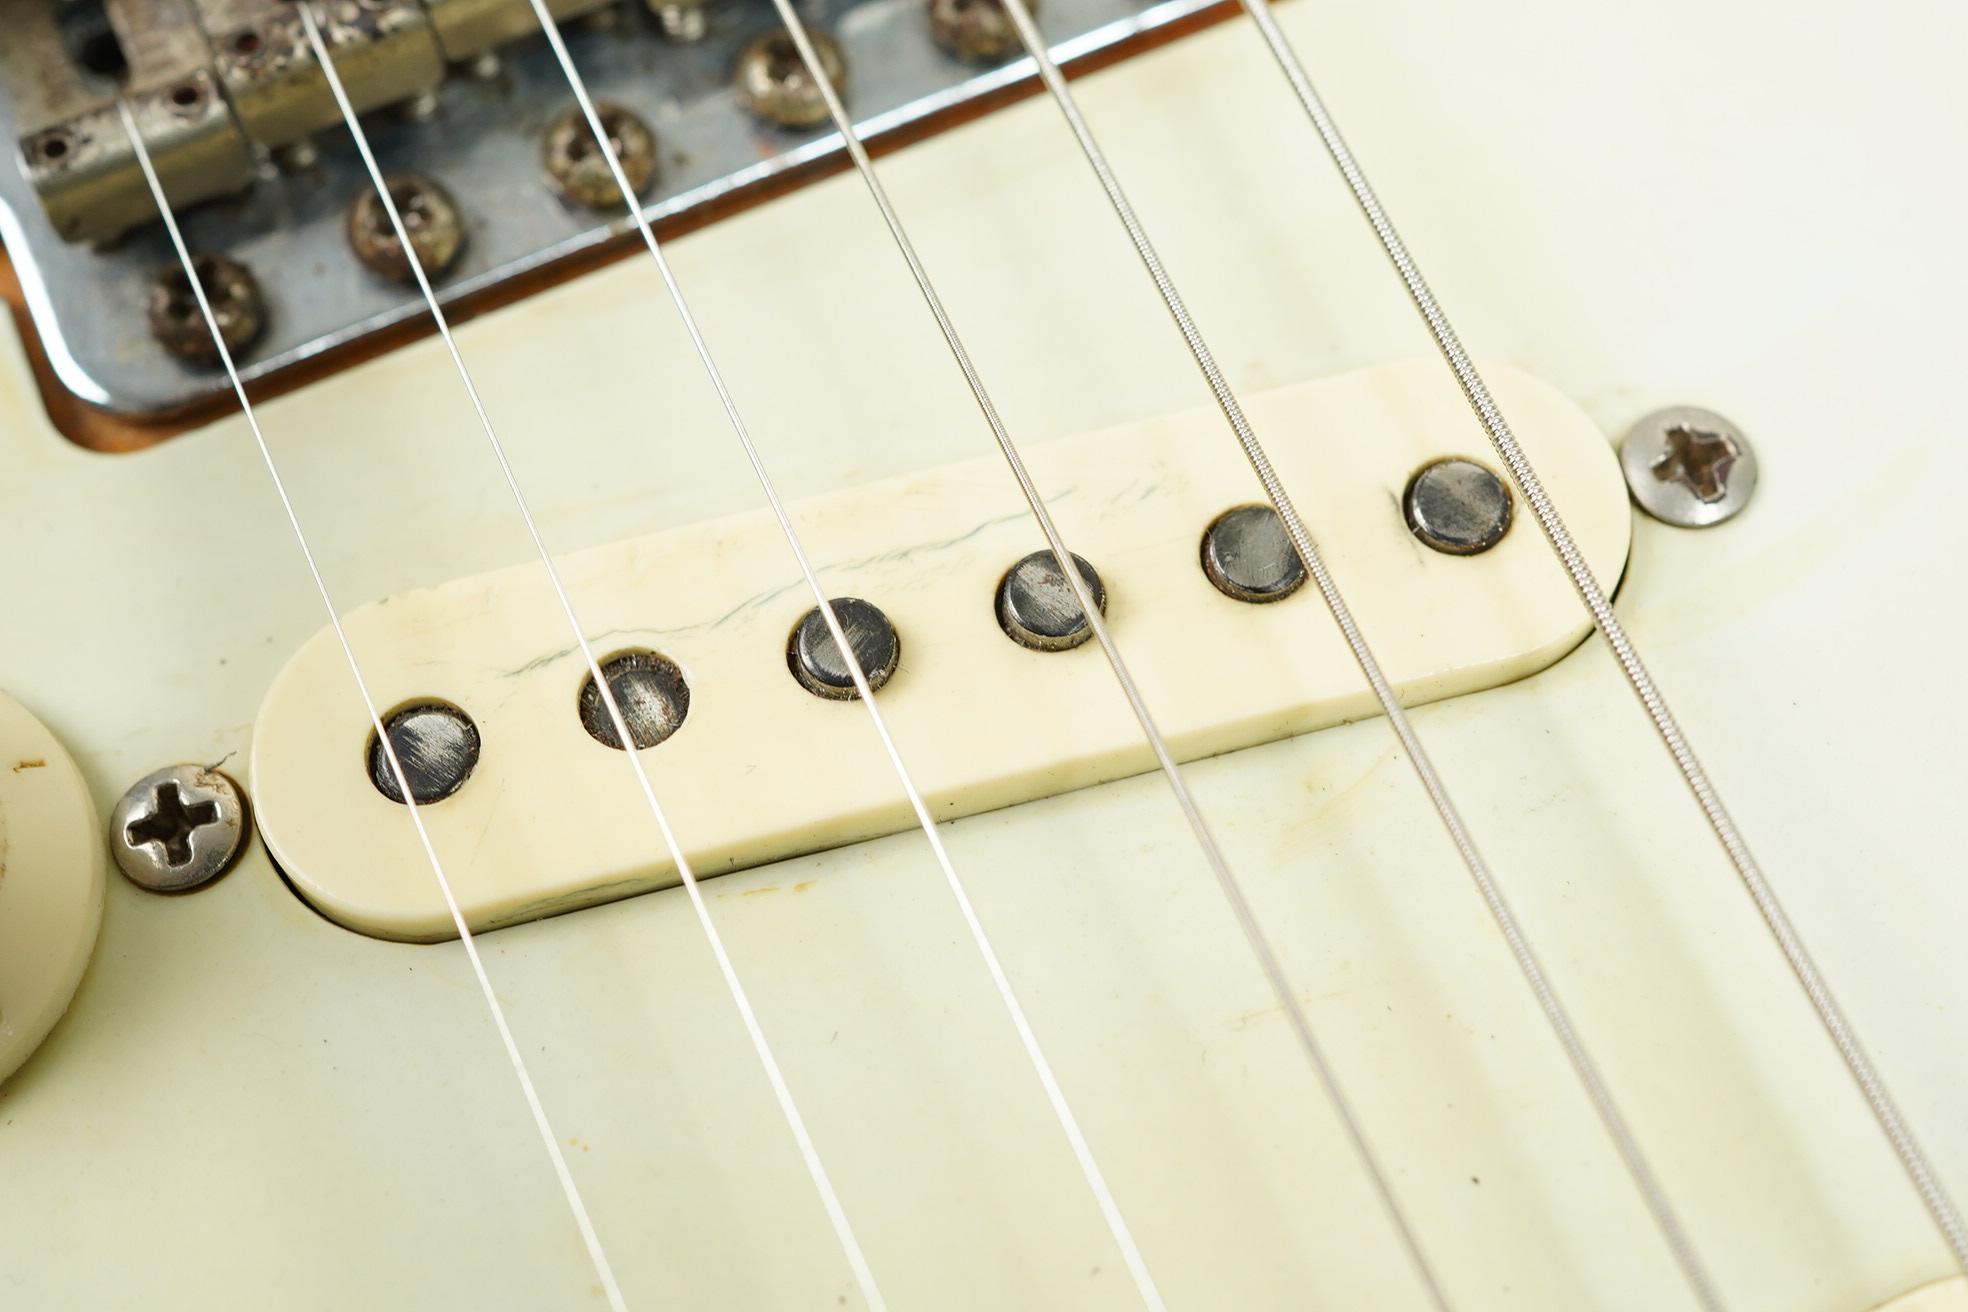 1962 Fender Stratocaster + Selmer Case